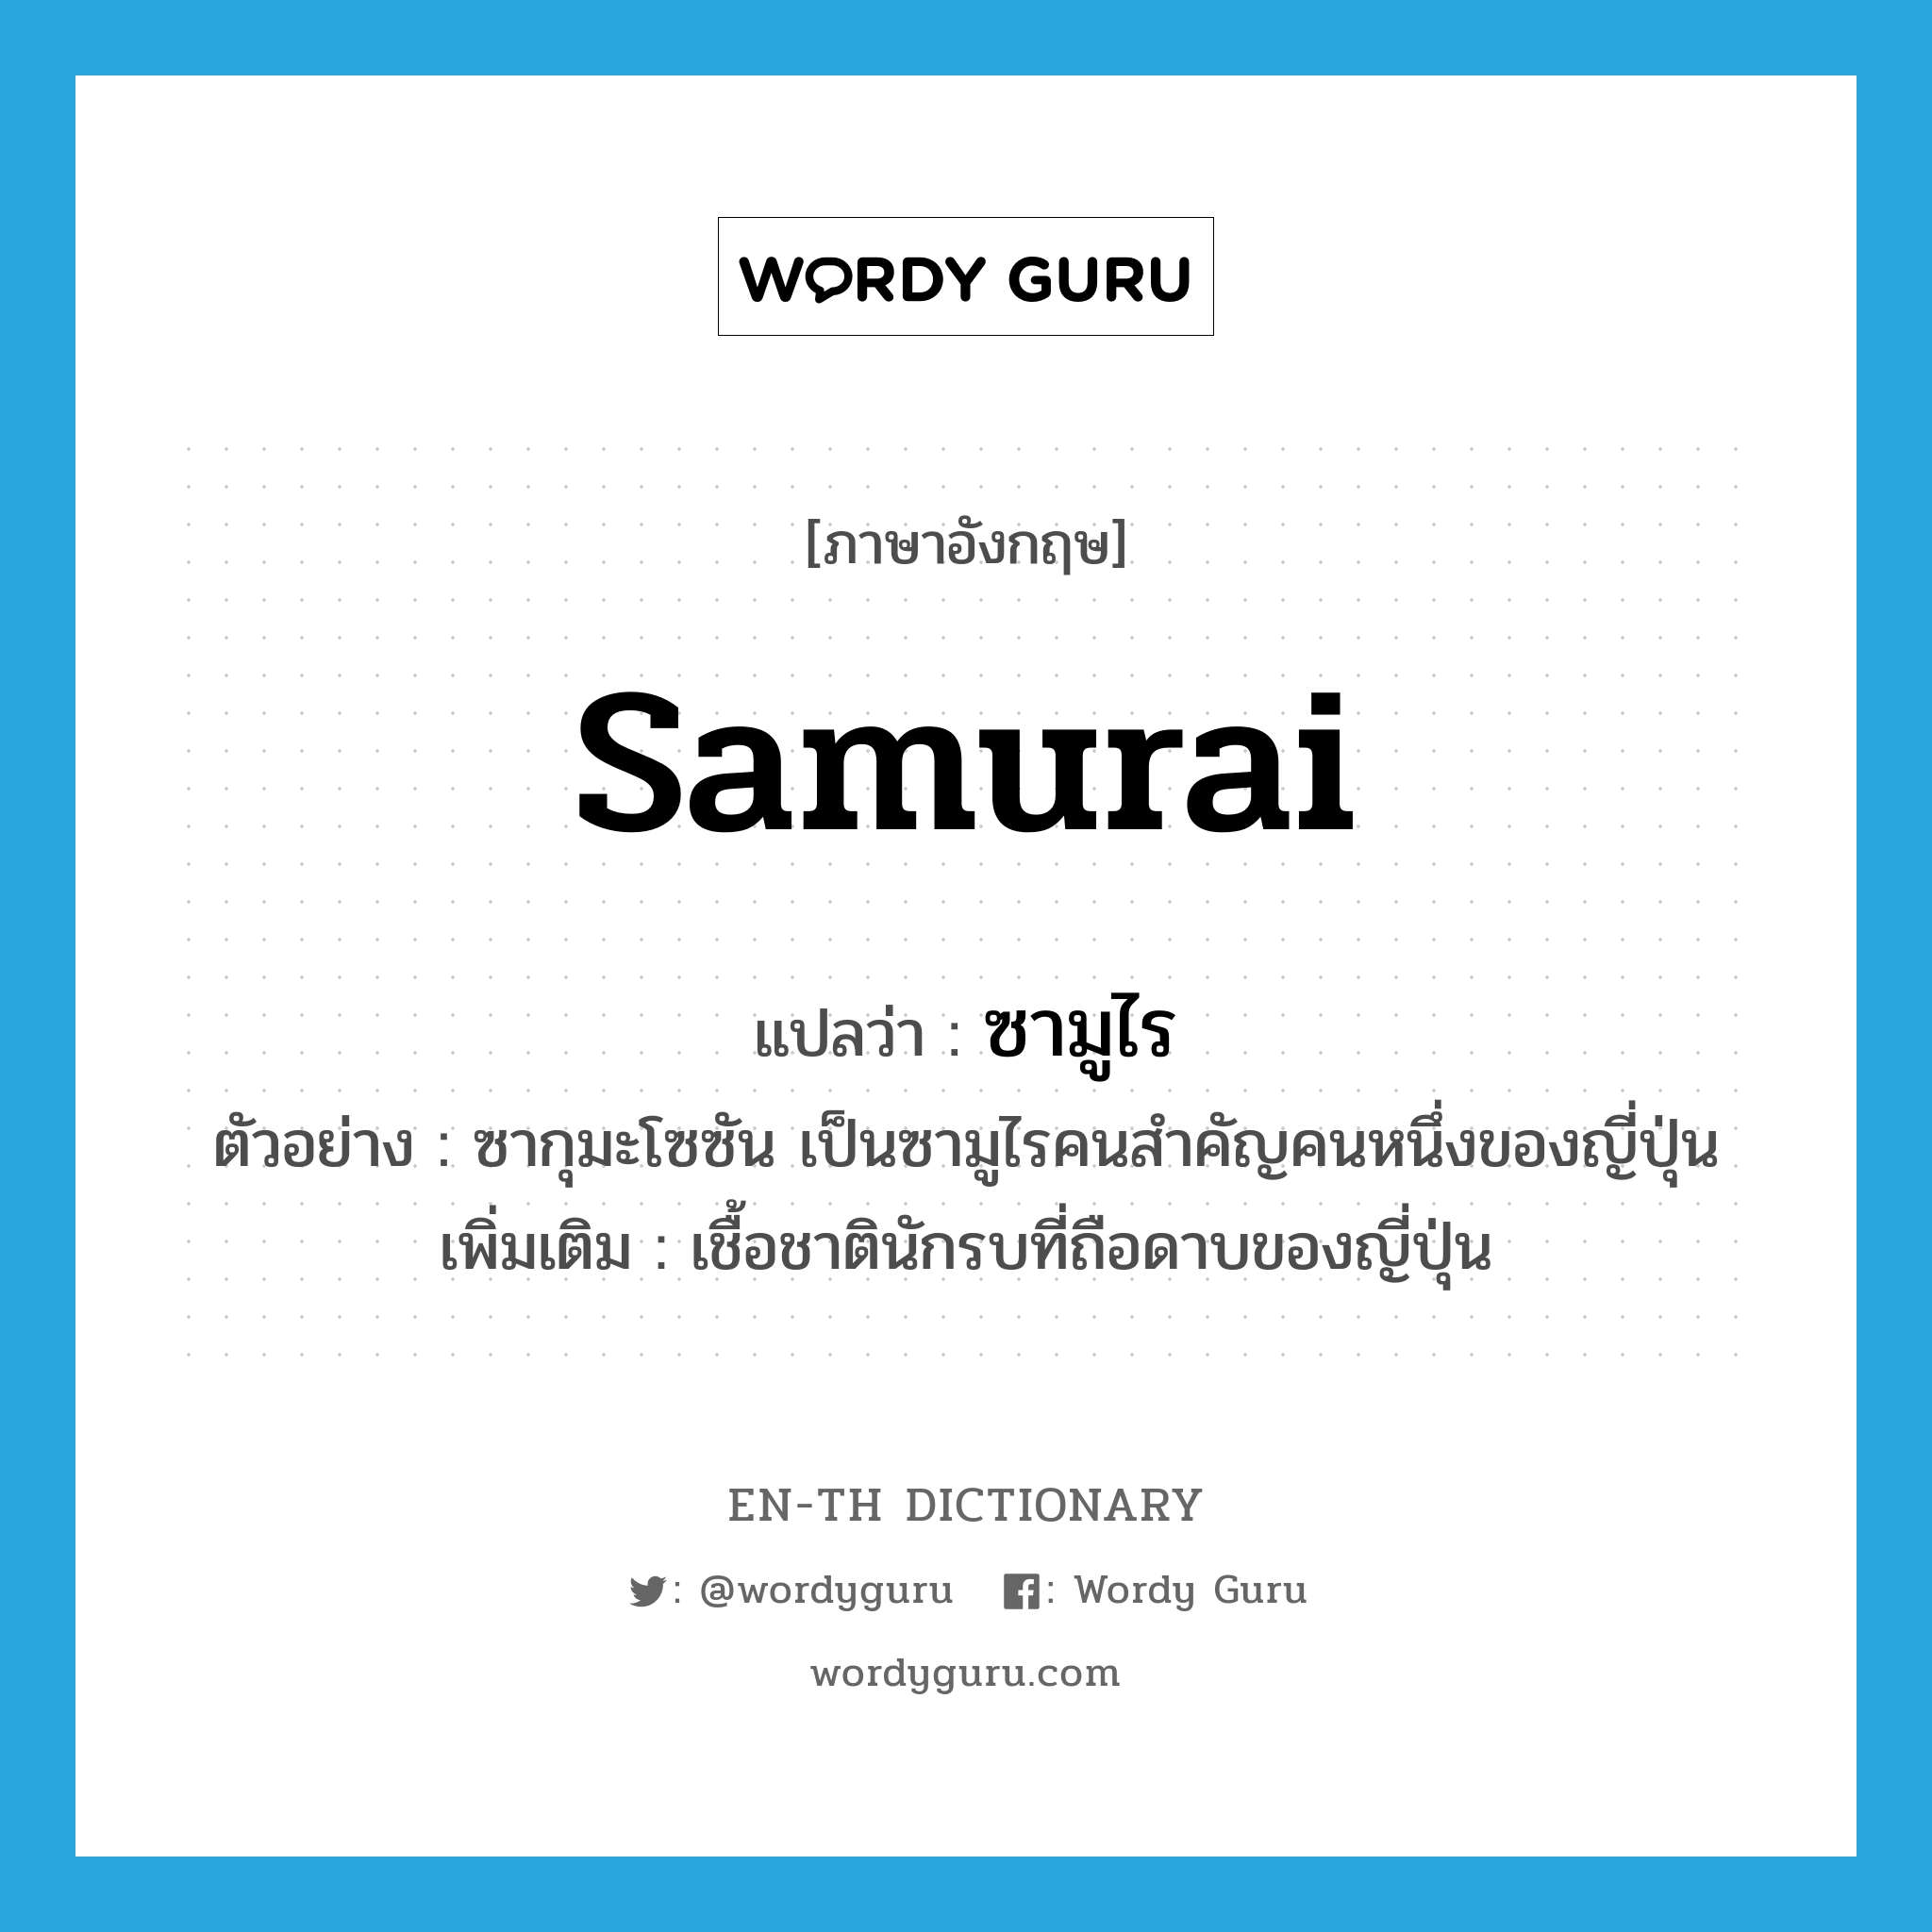 samurai แปลว่า?, คำศัพท์ภาษาอังกฤษ samurai แปลว่า ซามูไร ประเภท N ตัวอย่าง ซากุมะโซซัน เป็นซามูไรคนสำคัญคนหนึ่งของญี่ปุ่น เพิ่มเติม เชื้อชาตินักรบที่ถือดาบของญี่ปุ่น หมวด N